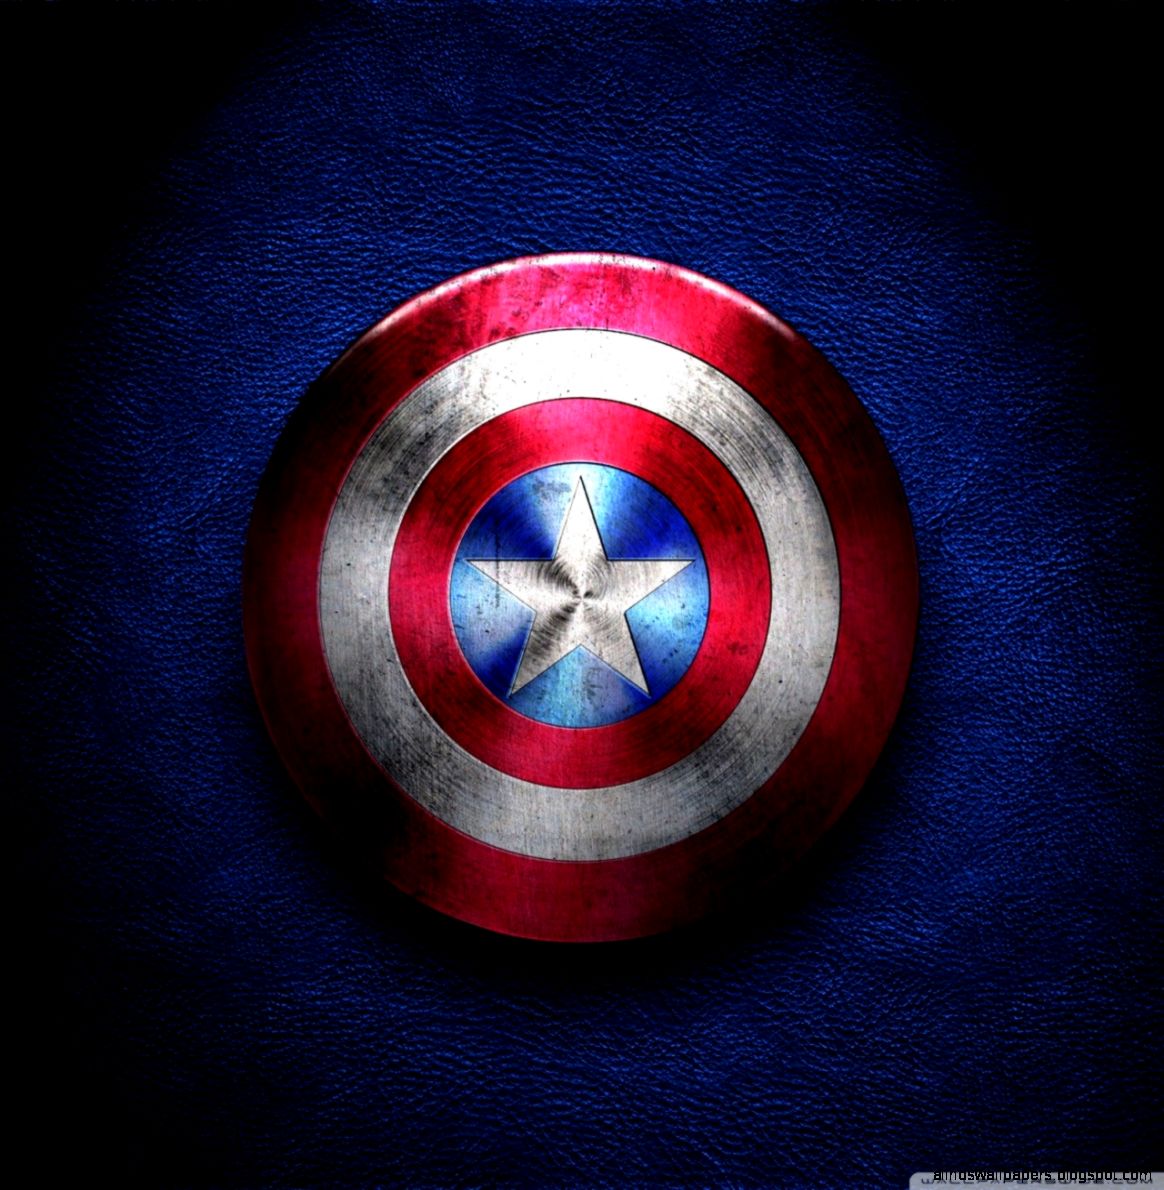 壁紙キャプテンアメリカアンドロイド用 キャプテン アメリカ スーパーヒーロー 架空の人物 アベンジャーズ シンボル Wallpaperuse